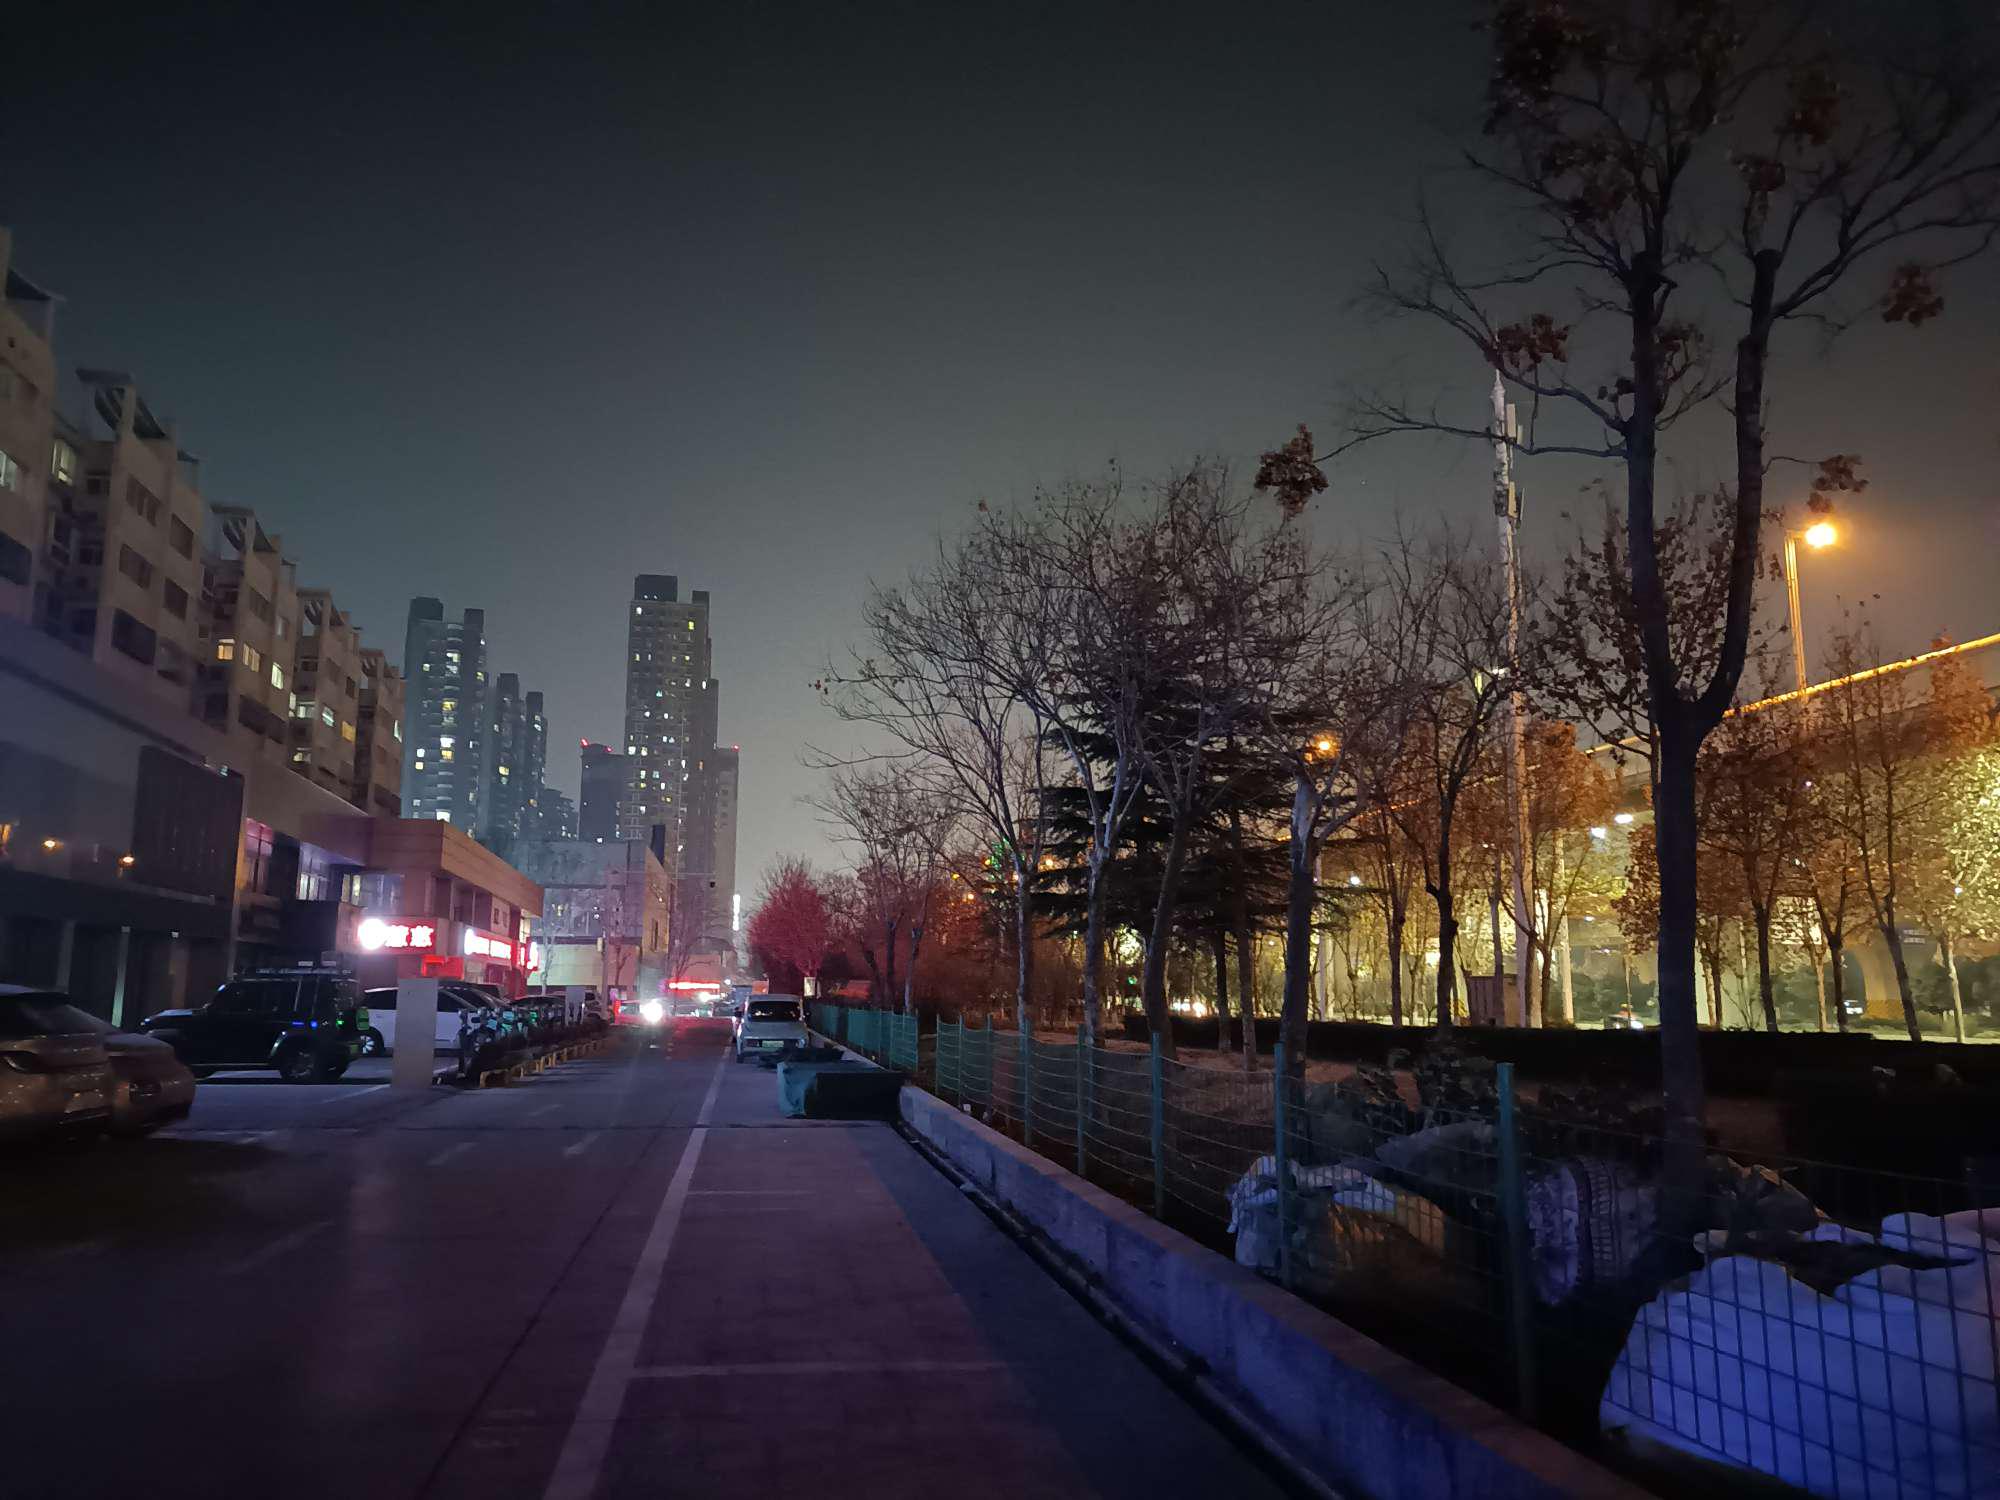 郑州夜景图片步行街图片